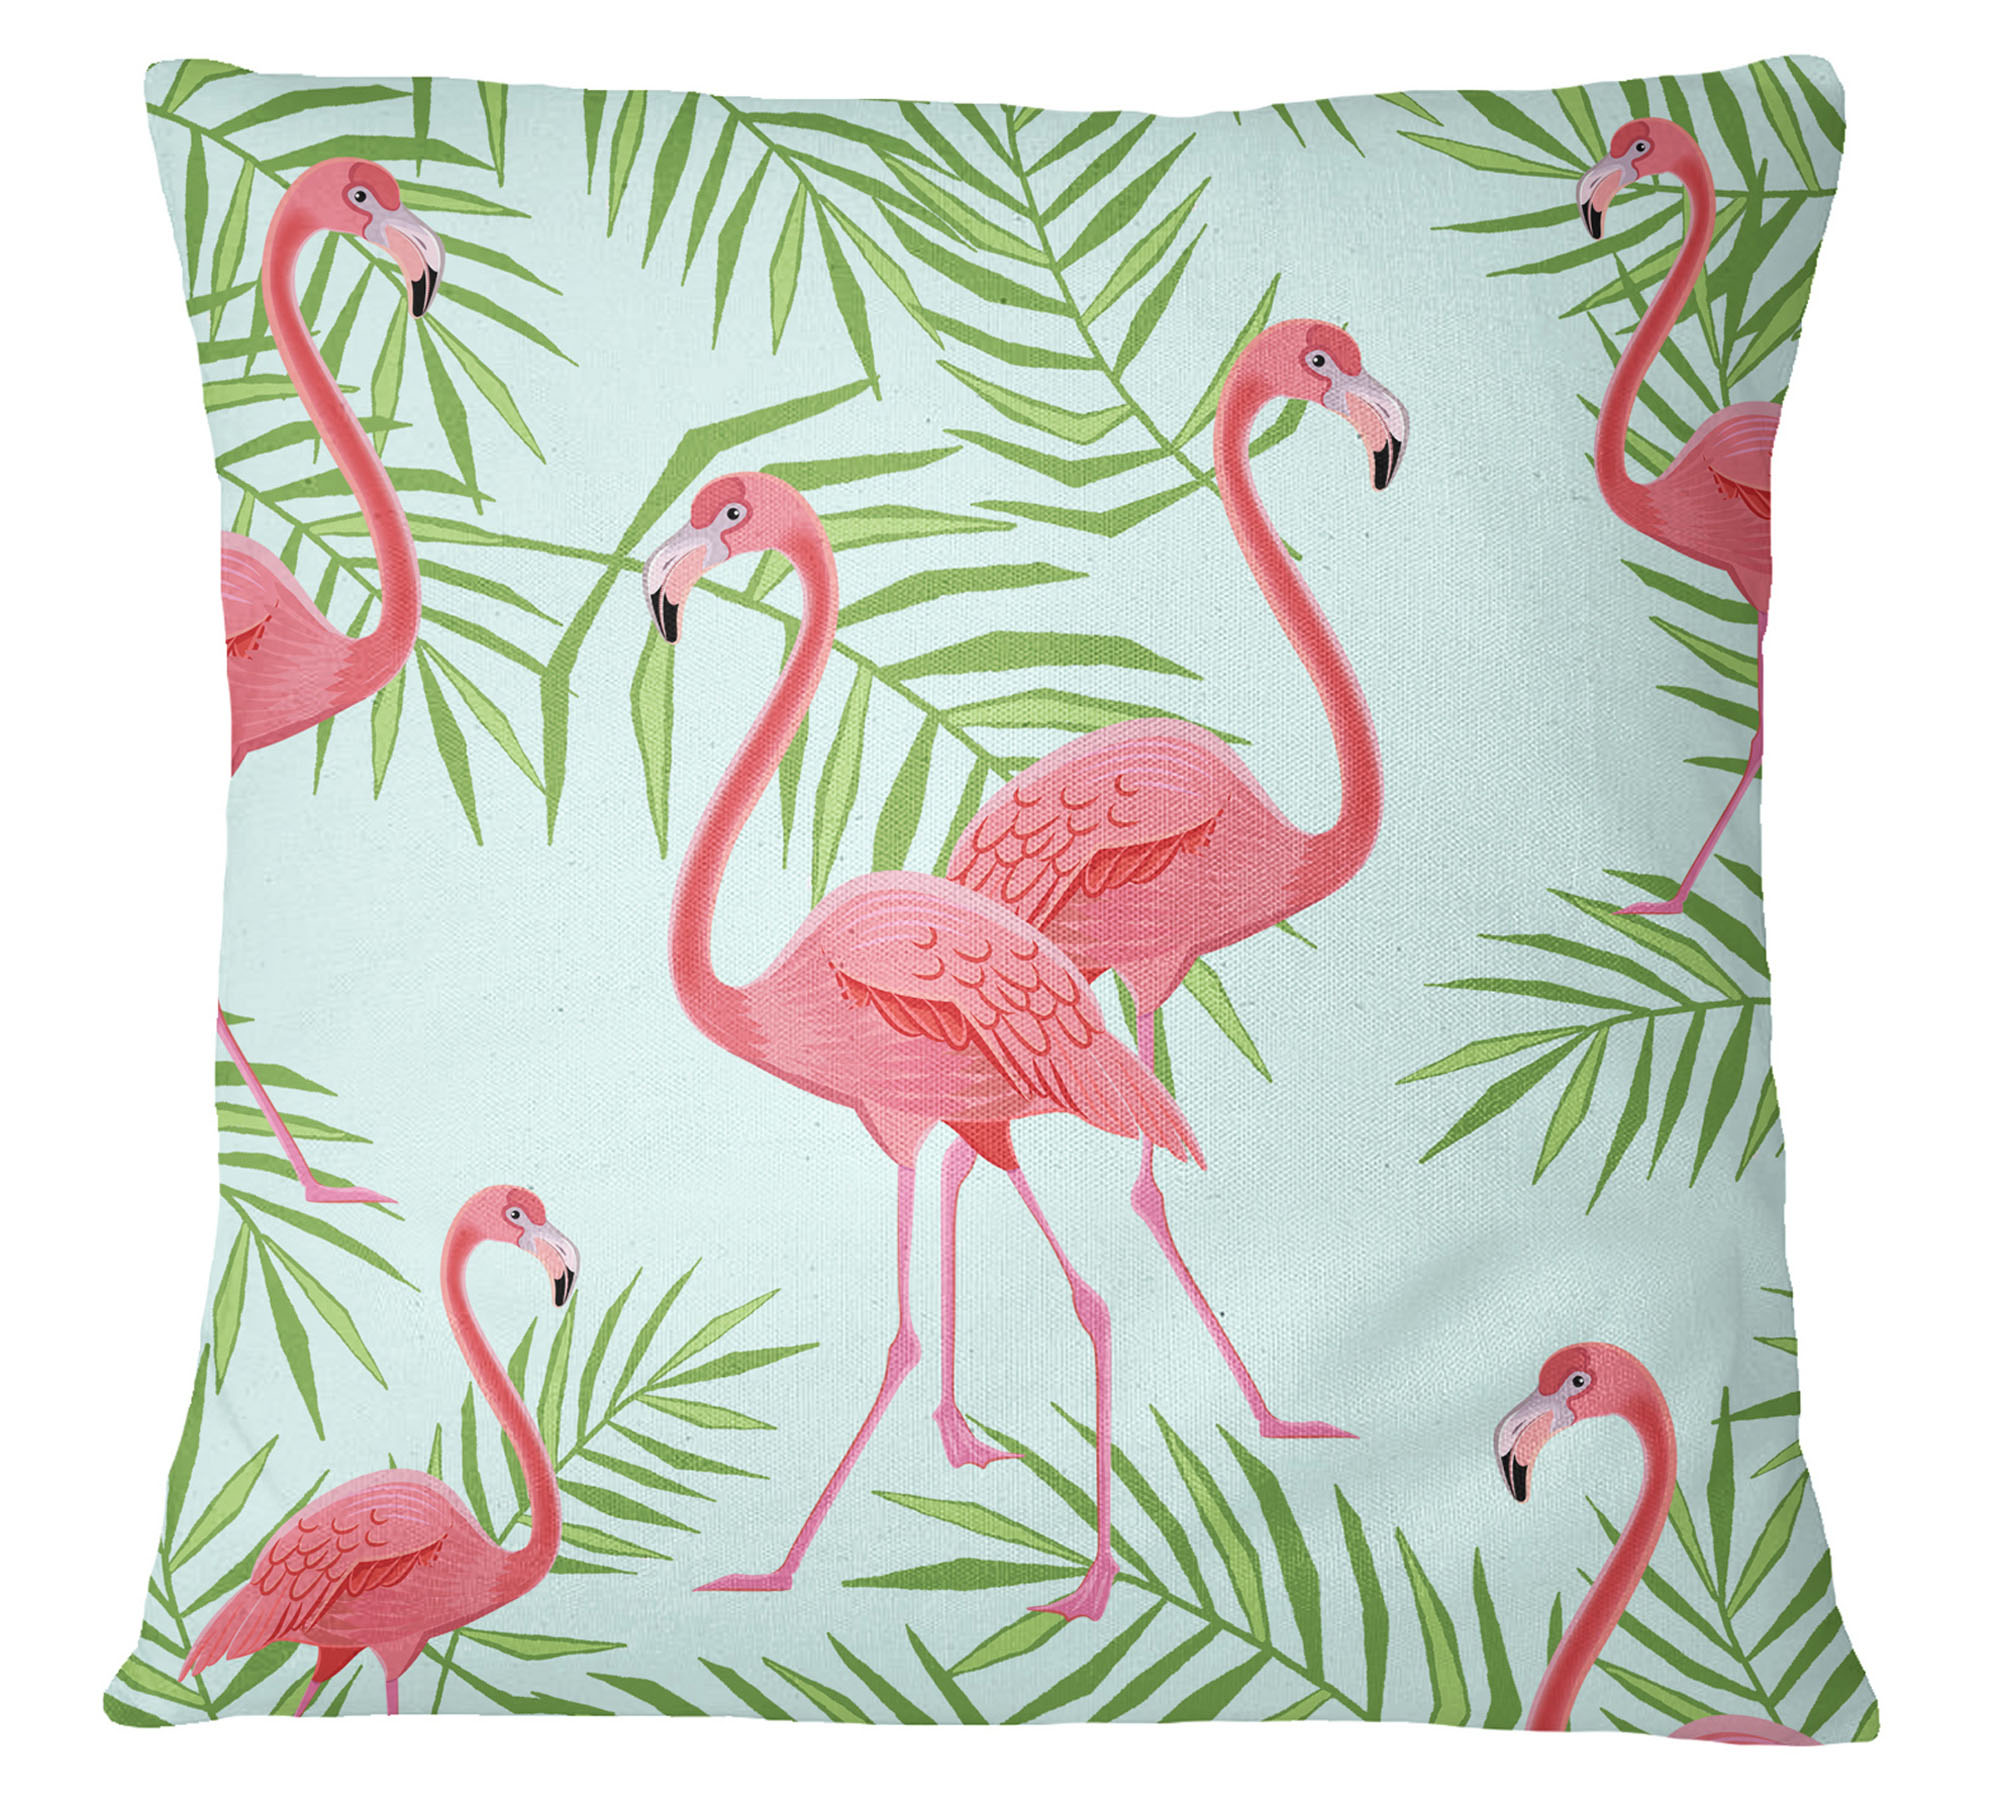 S4Sassy Flamingo gedruckt Orange dekorative Abdeckung Wurfkissen Kissenbezug